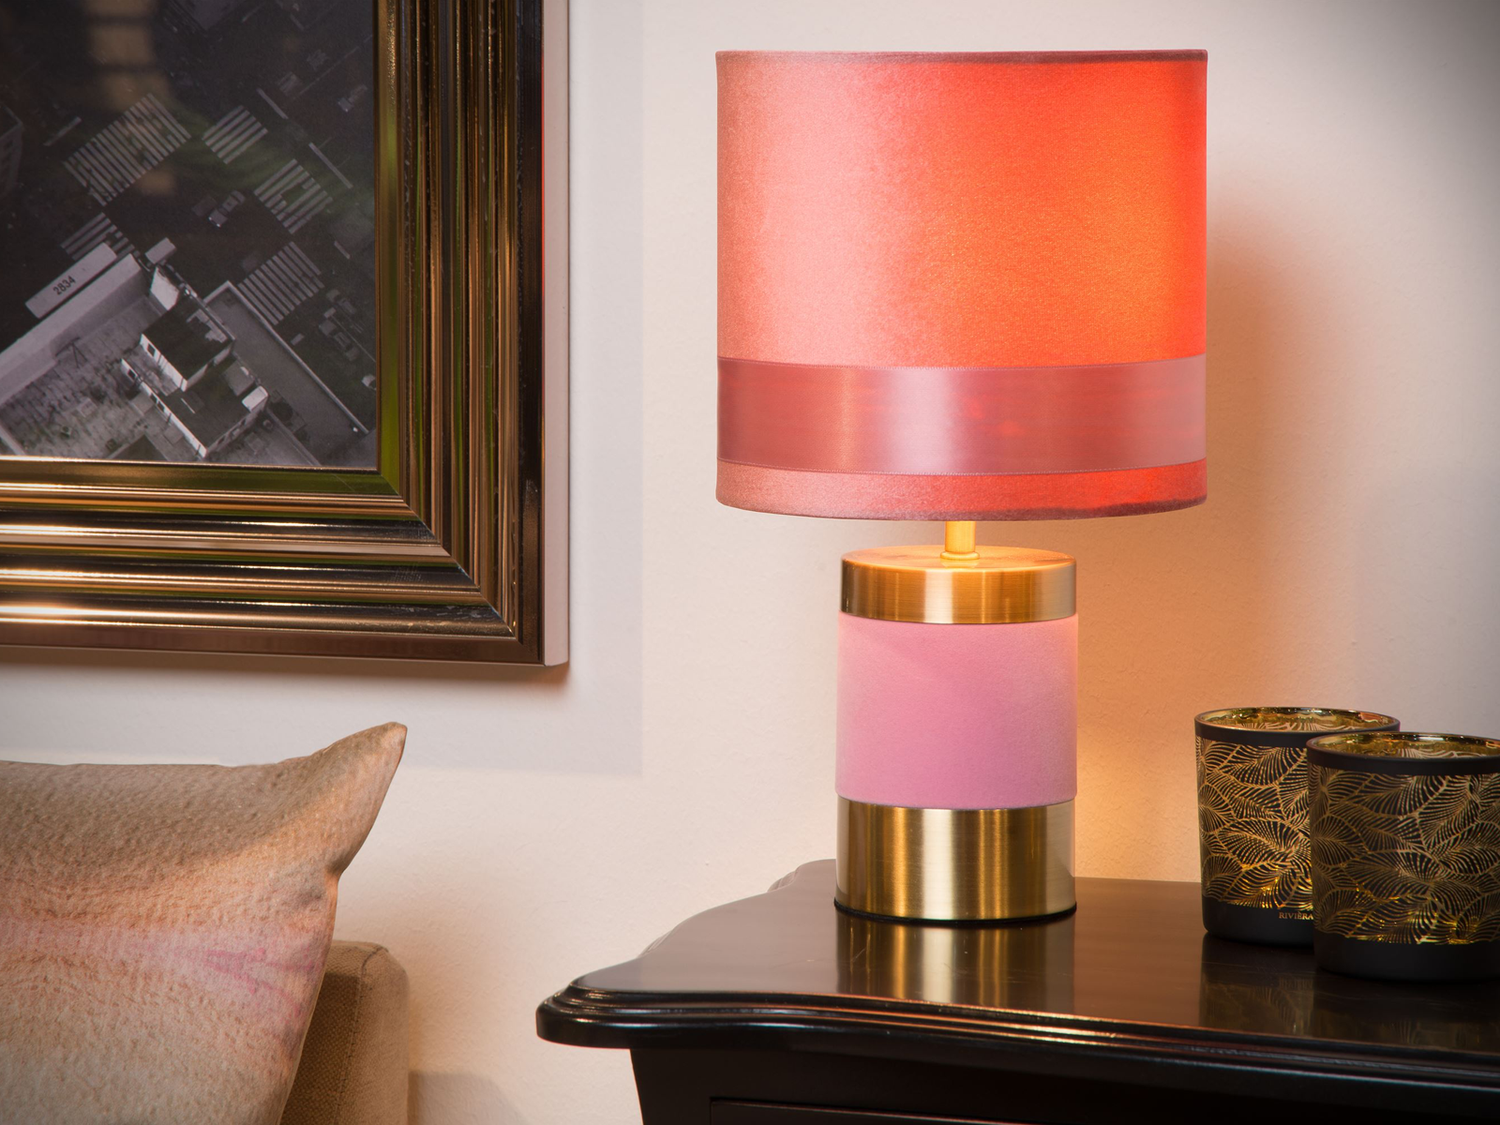 Stolní lampa Extravaganza Frizzle, růžová, E14, 32cm